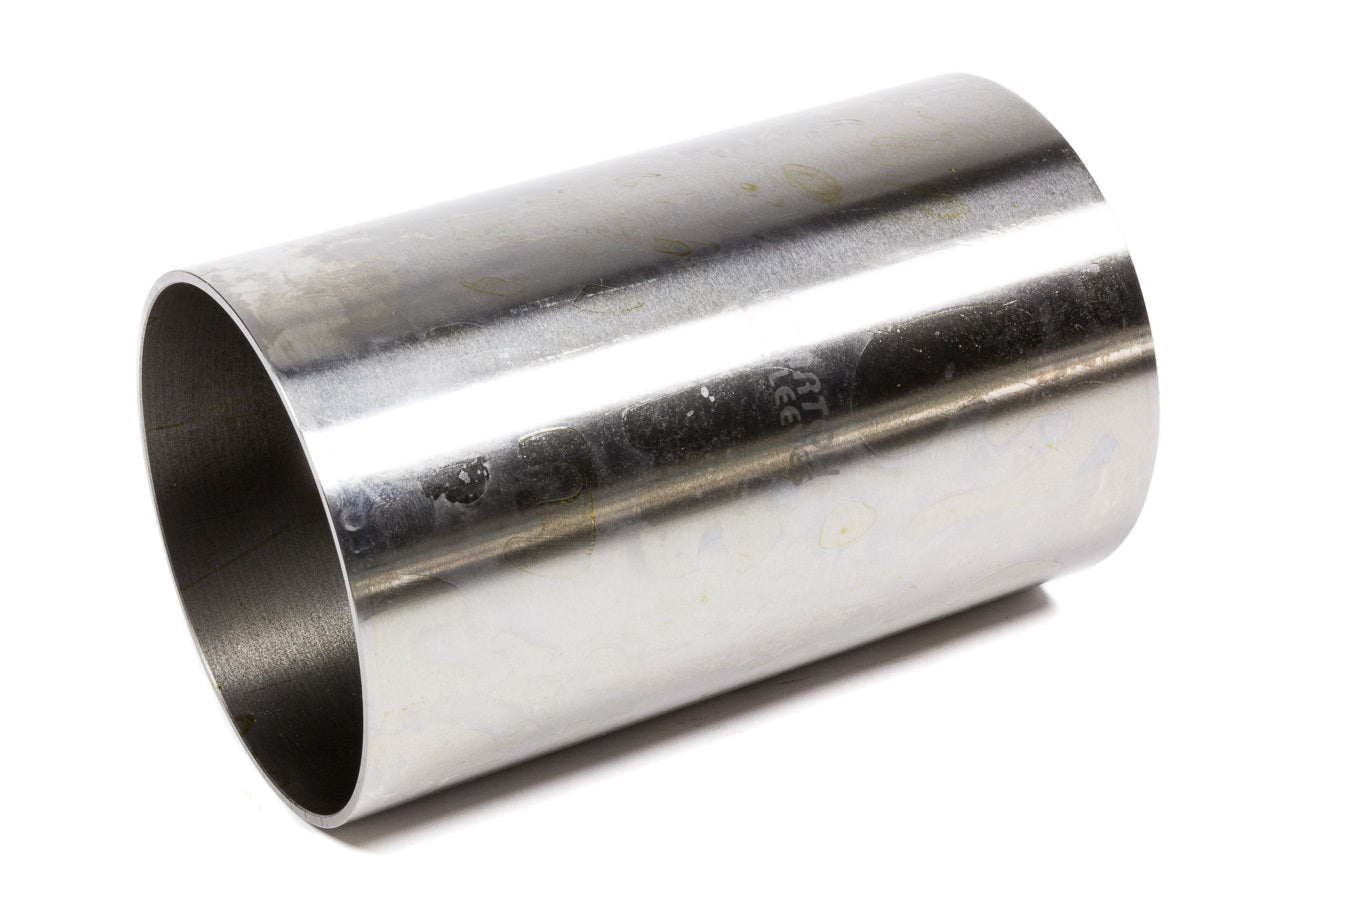 Darton Repair Cylinder Sleeve 4.056 Bore x 4.250 OD DARRS4.0625-3-32